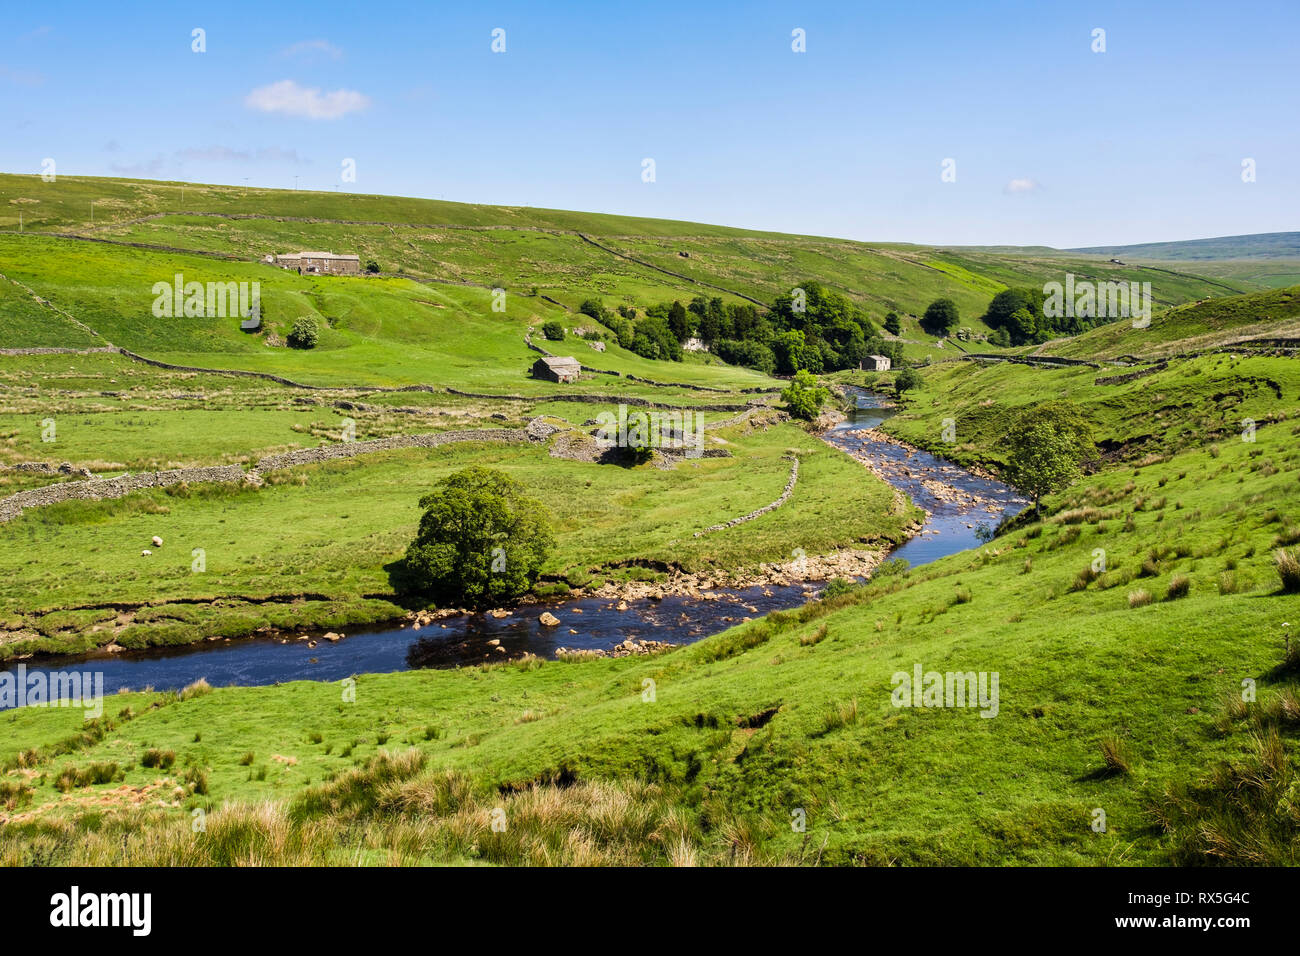 Paesaggio di campagna inglese con fattoria e granai sul fiume Swale in Upper Swaledale, Yorkshire Dales National Park, North Yorkshire, Inghilterra, Regno Unito, Gran Bretagna Foto Stock